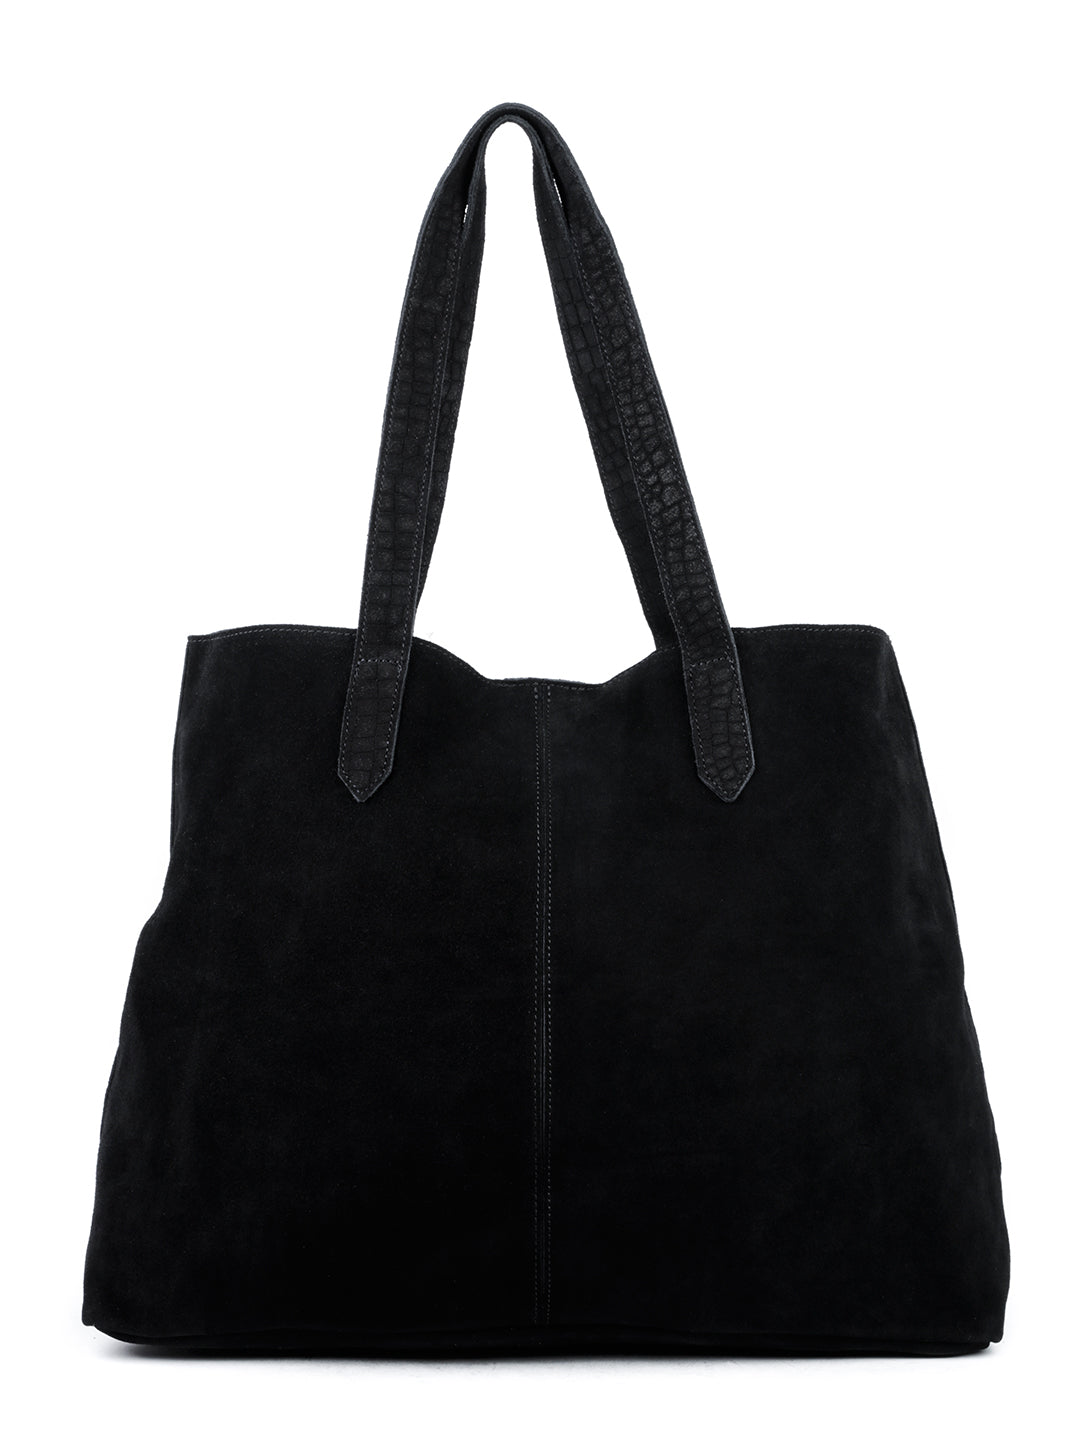 Black Fabric Tote Bag